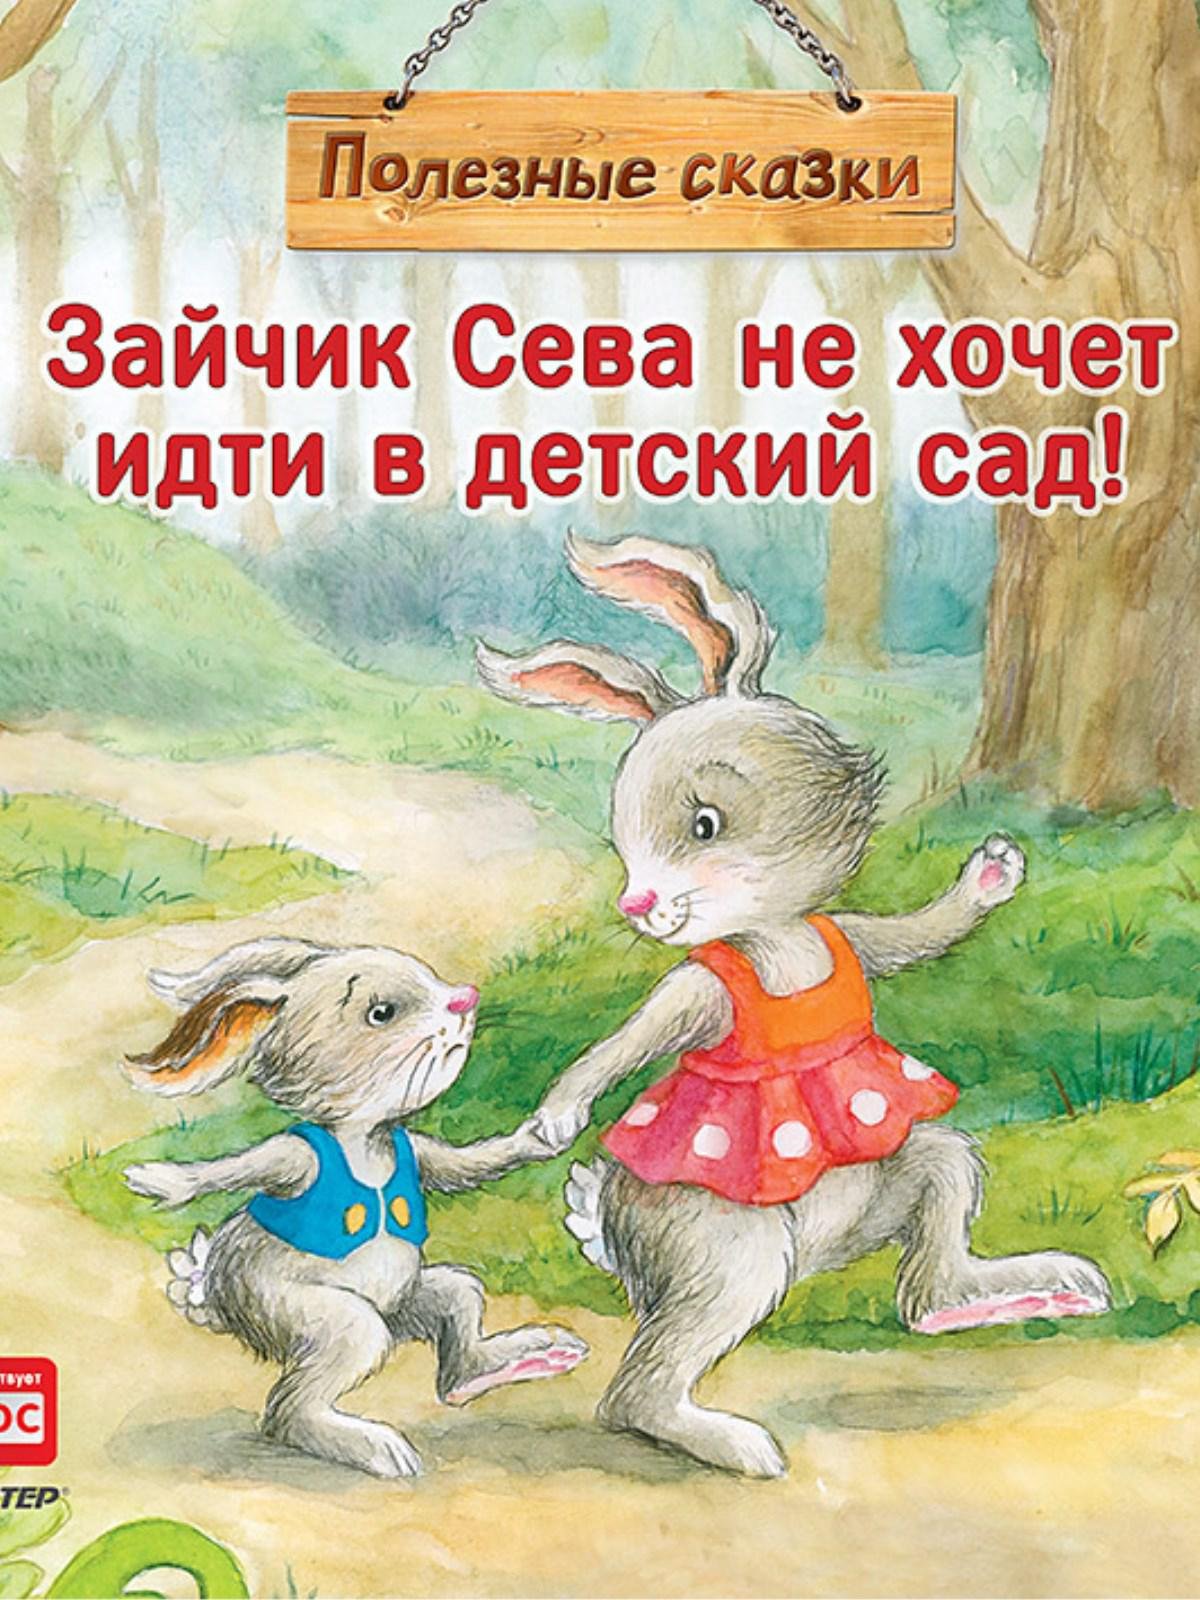 Книга про зайца. Зайчик Сева книги. Полезные сказки зайчик Сева. Зайчик Сева идет в детский сад. Зайчик Сева не хочет идти в сад.